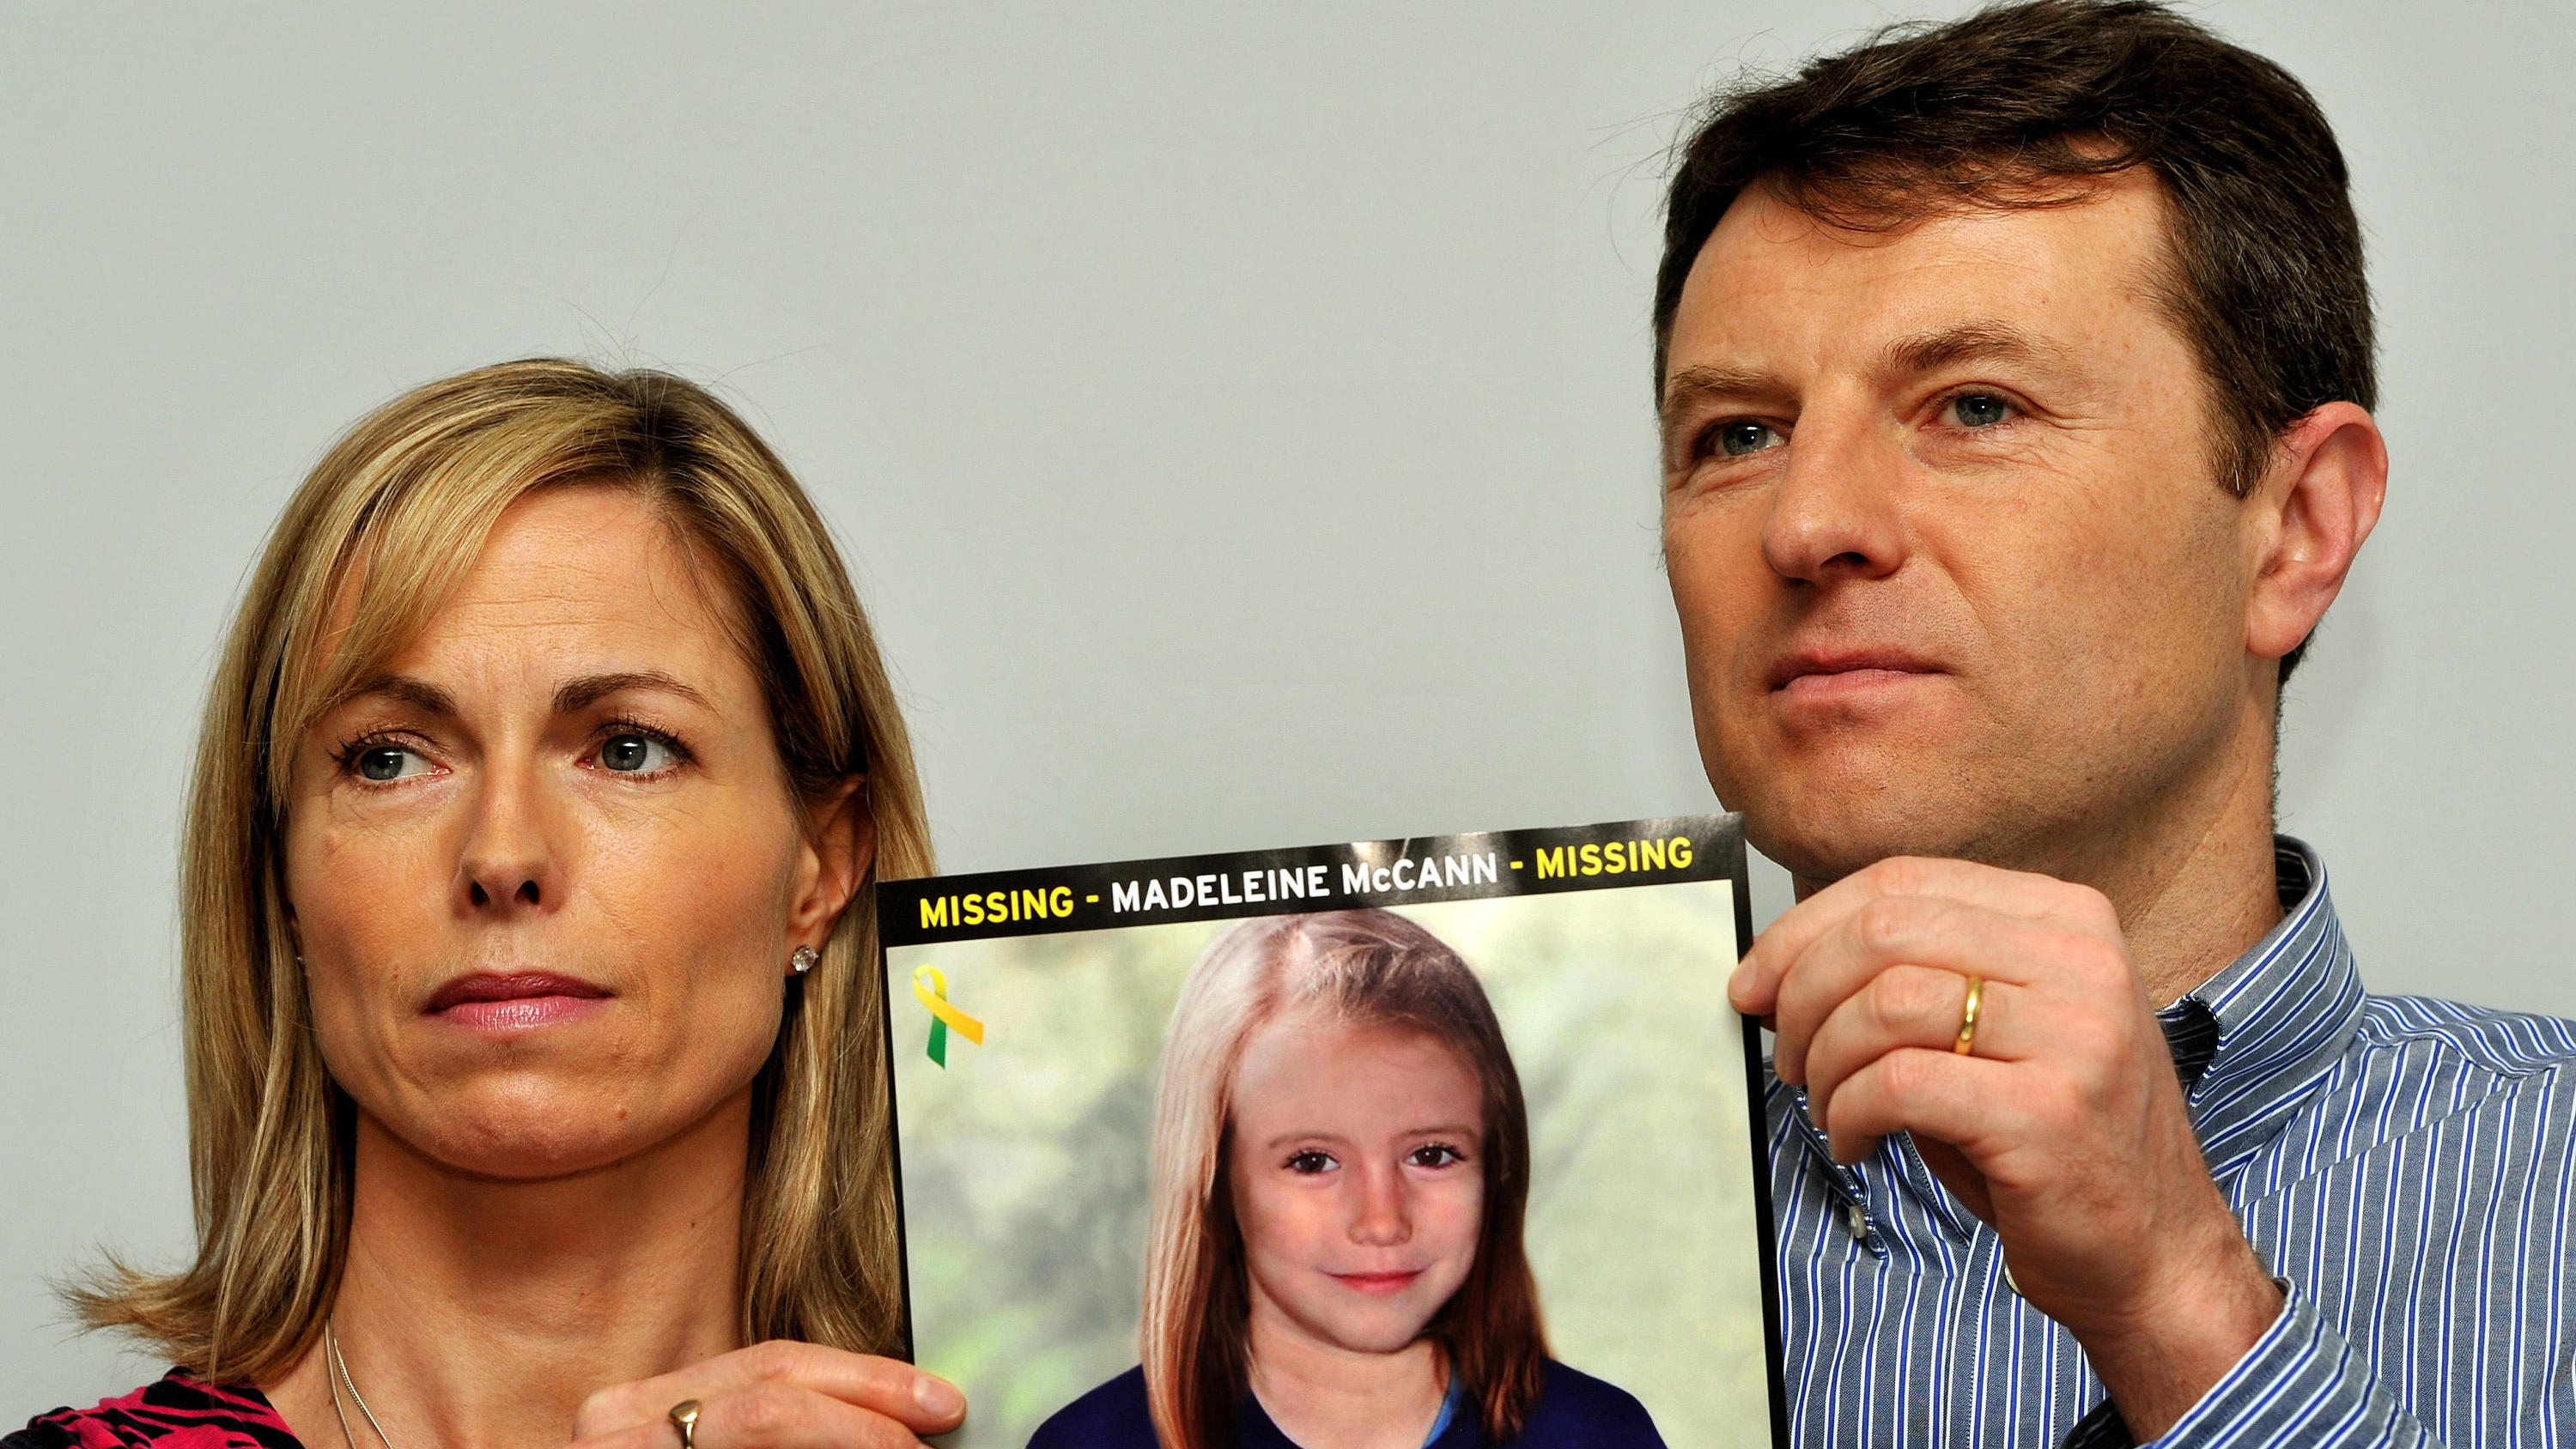 02.05.2012, Großbritannien, London: Kate und Gerry McCann, Eltern der vor 13 Jahren verschwundenen Britin Madeleine McCann halten bei einem Such-Aufruf das Foto ihrer Tochter. Im Fall des vor gut 13 Jahren in Portugal verschwundenen britischen Mädche